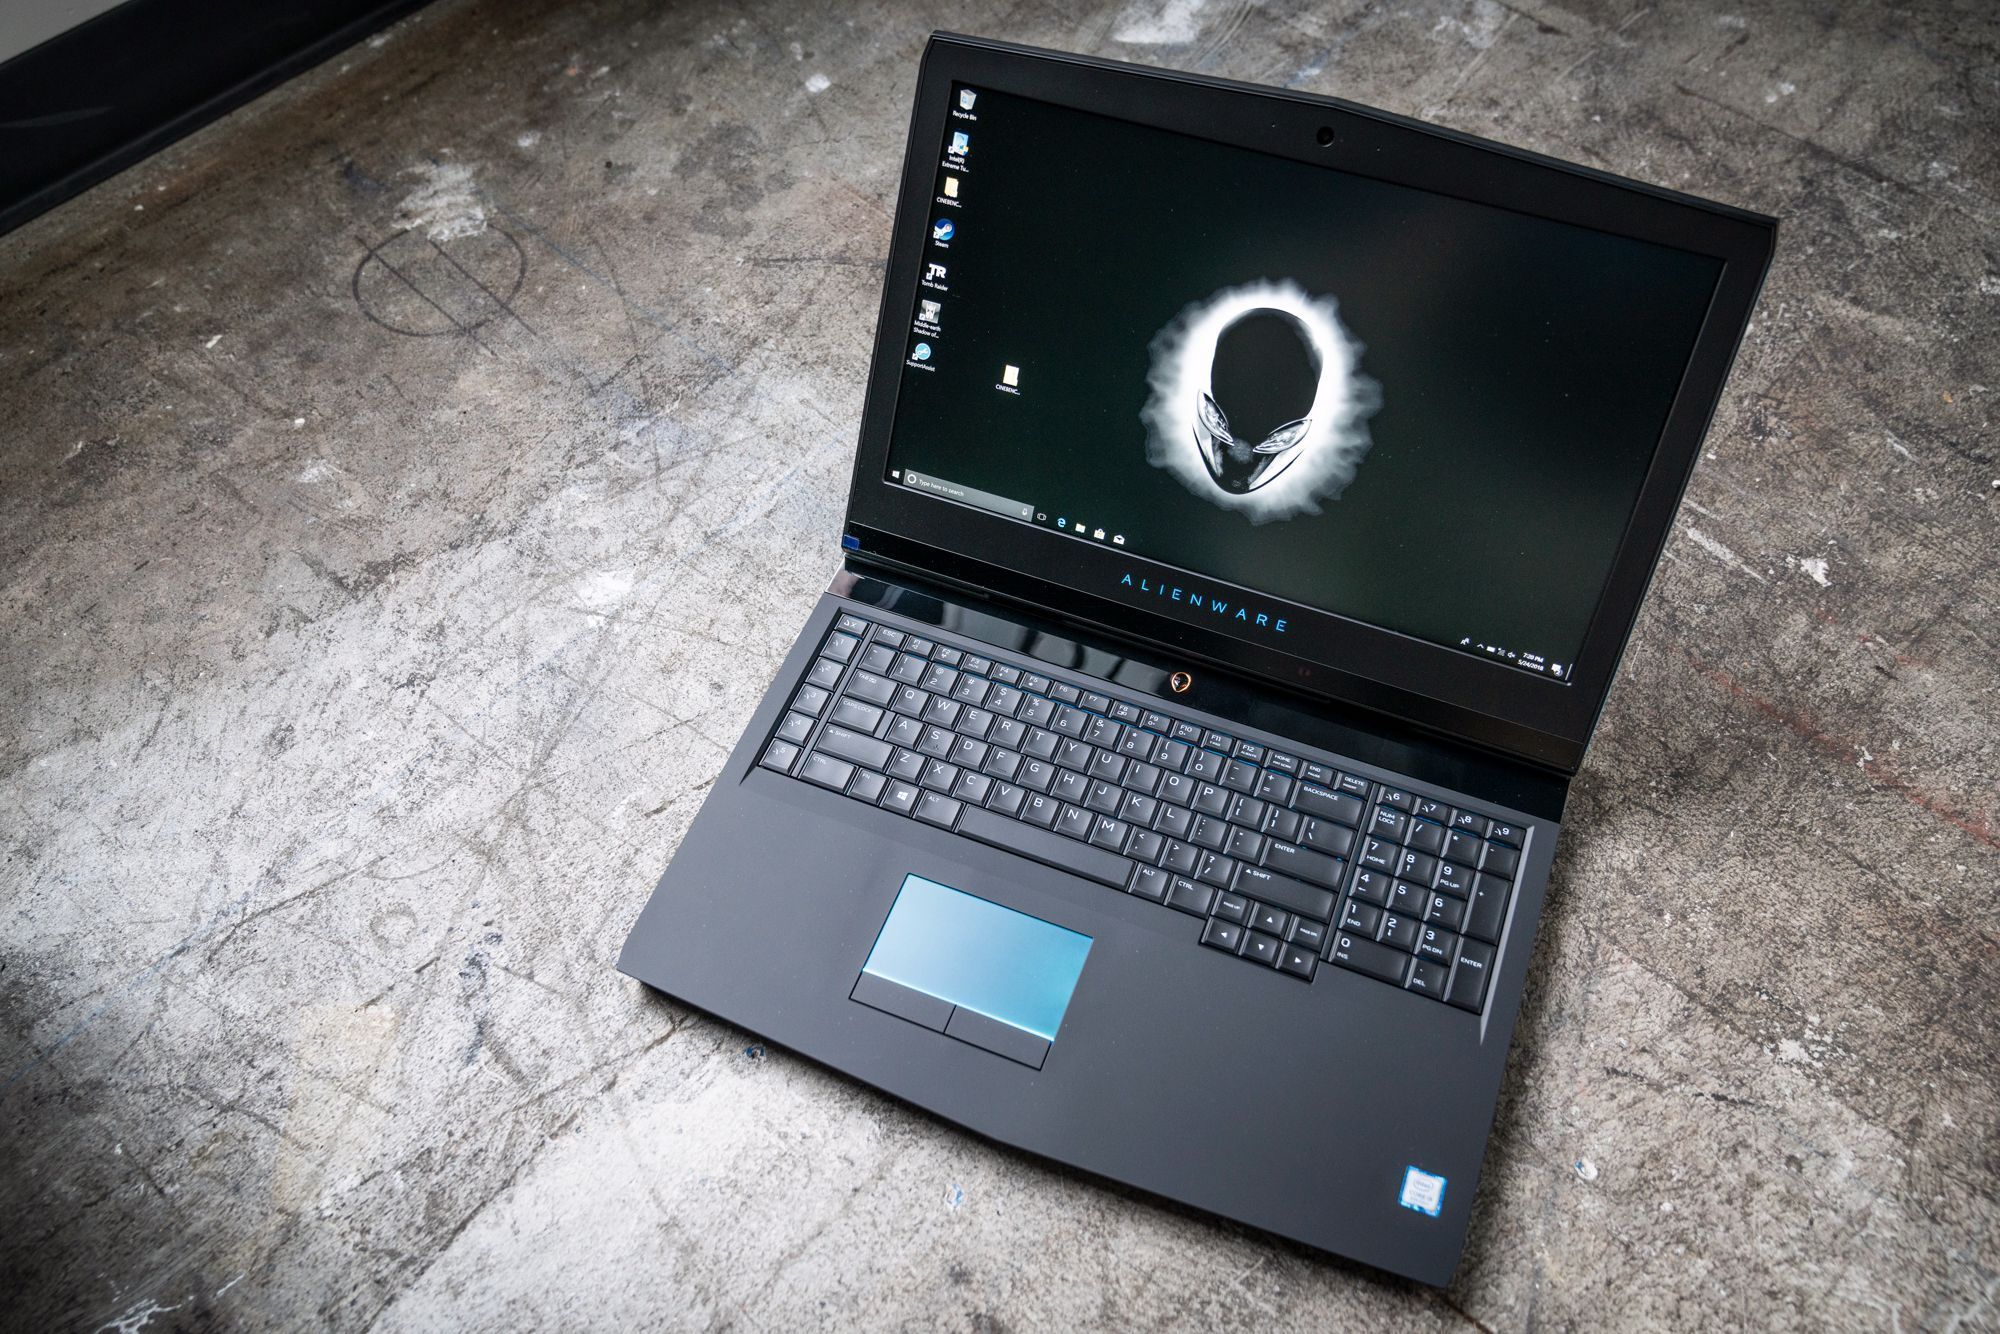 Mua Bán Laptop Dell Alienware Gaming Cũ, Mới 99%, Giá Rẻ Toàn quốc